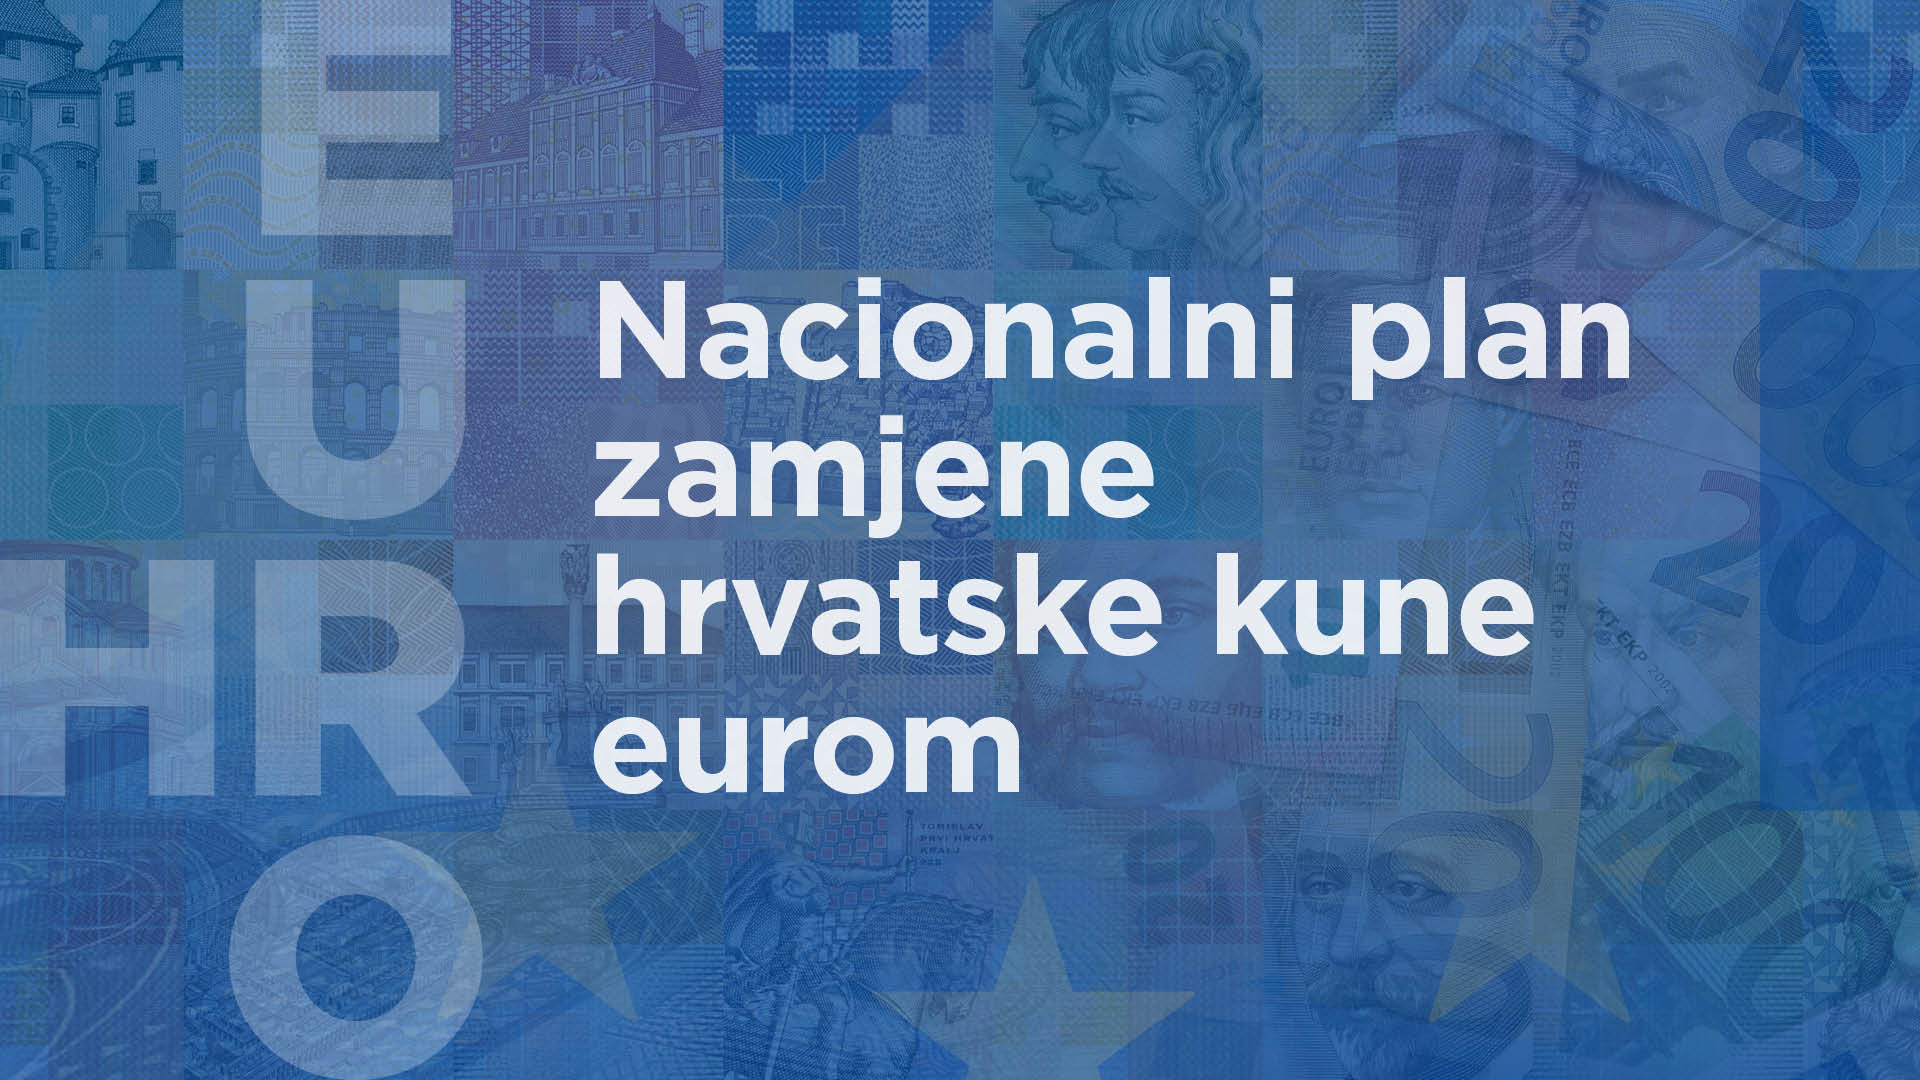 Nacionalni plan zamjene hrvatske kune eurom na javnom savjetovanju